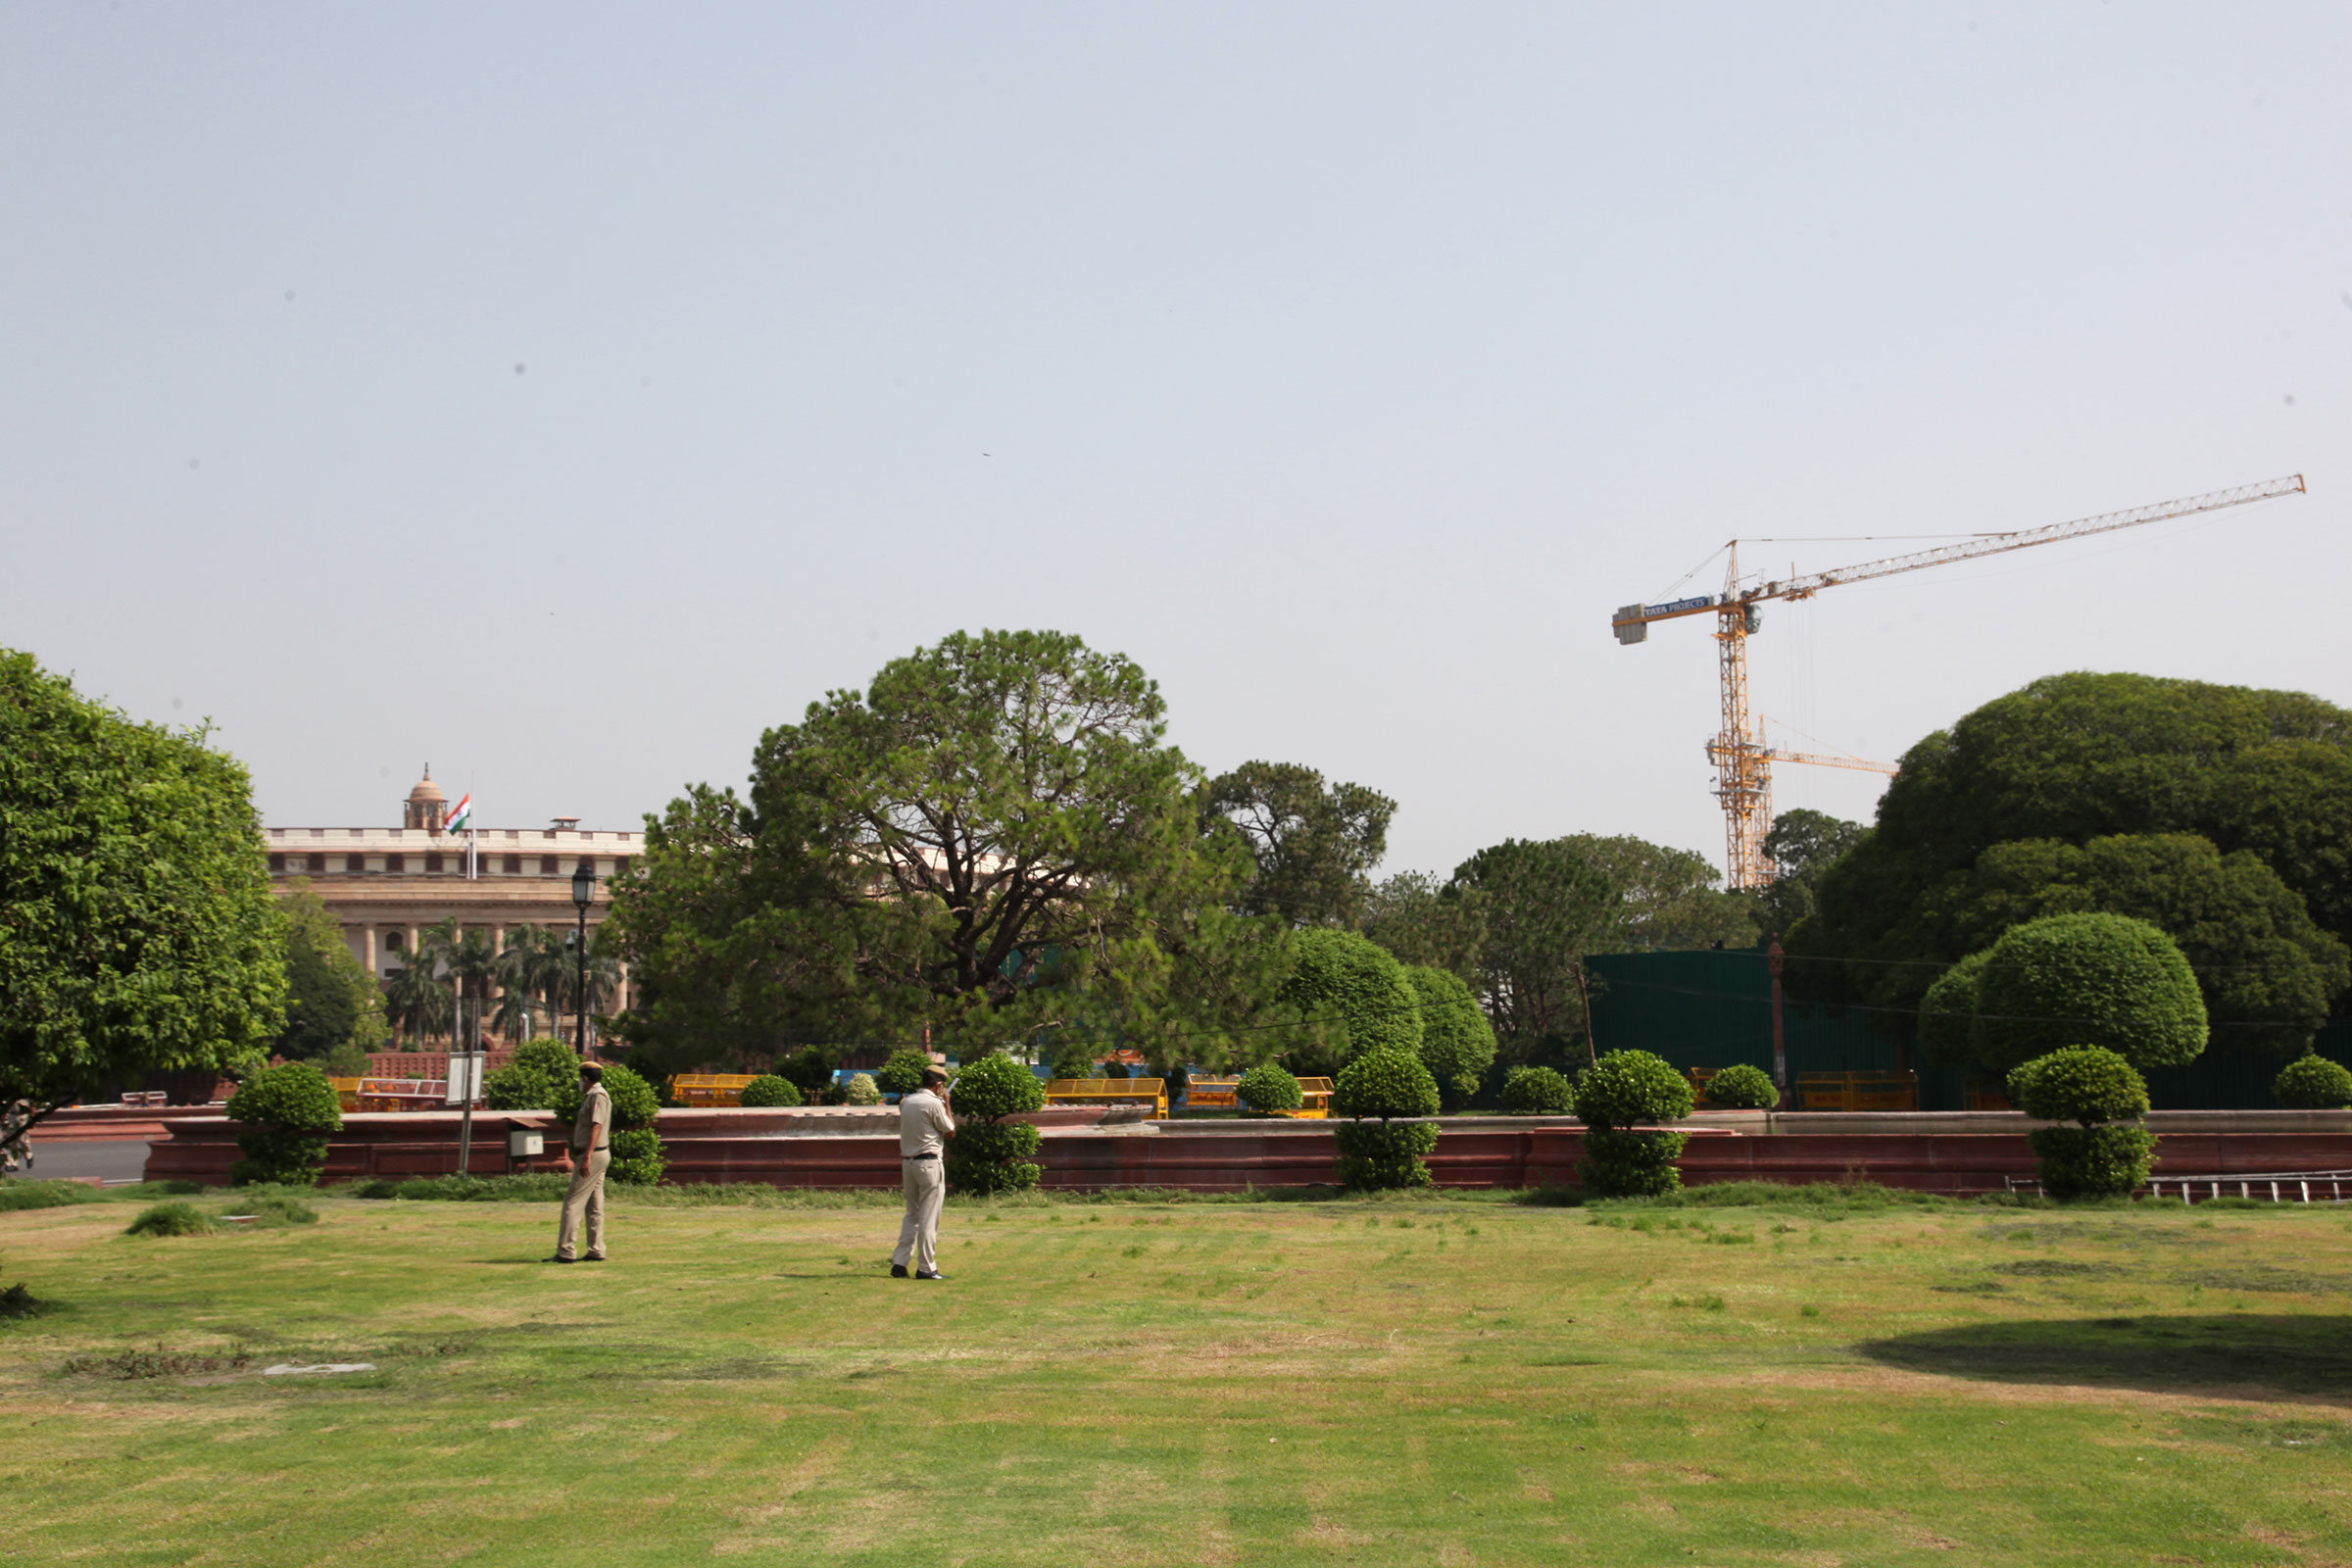 Hindistan Parlamentosu'nun yuvarlak miras binası, 5 Haziran 2021'de yeni Parlamento binasının inşası için devasa vinçlerle görülebilir. (Pallava Bagla—Corbis/Getty Images)